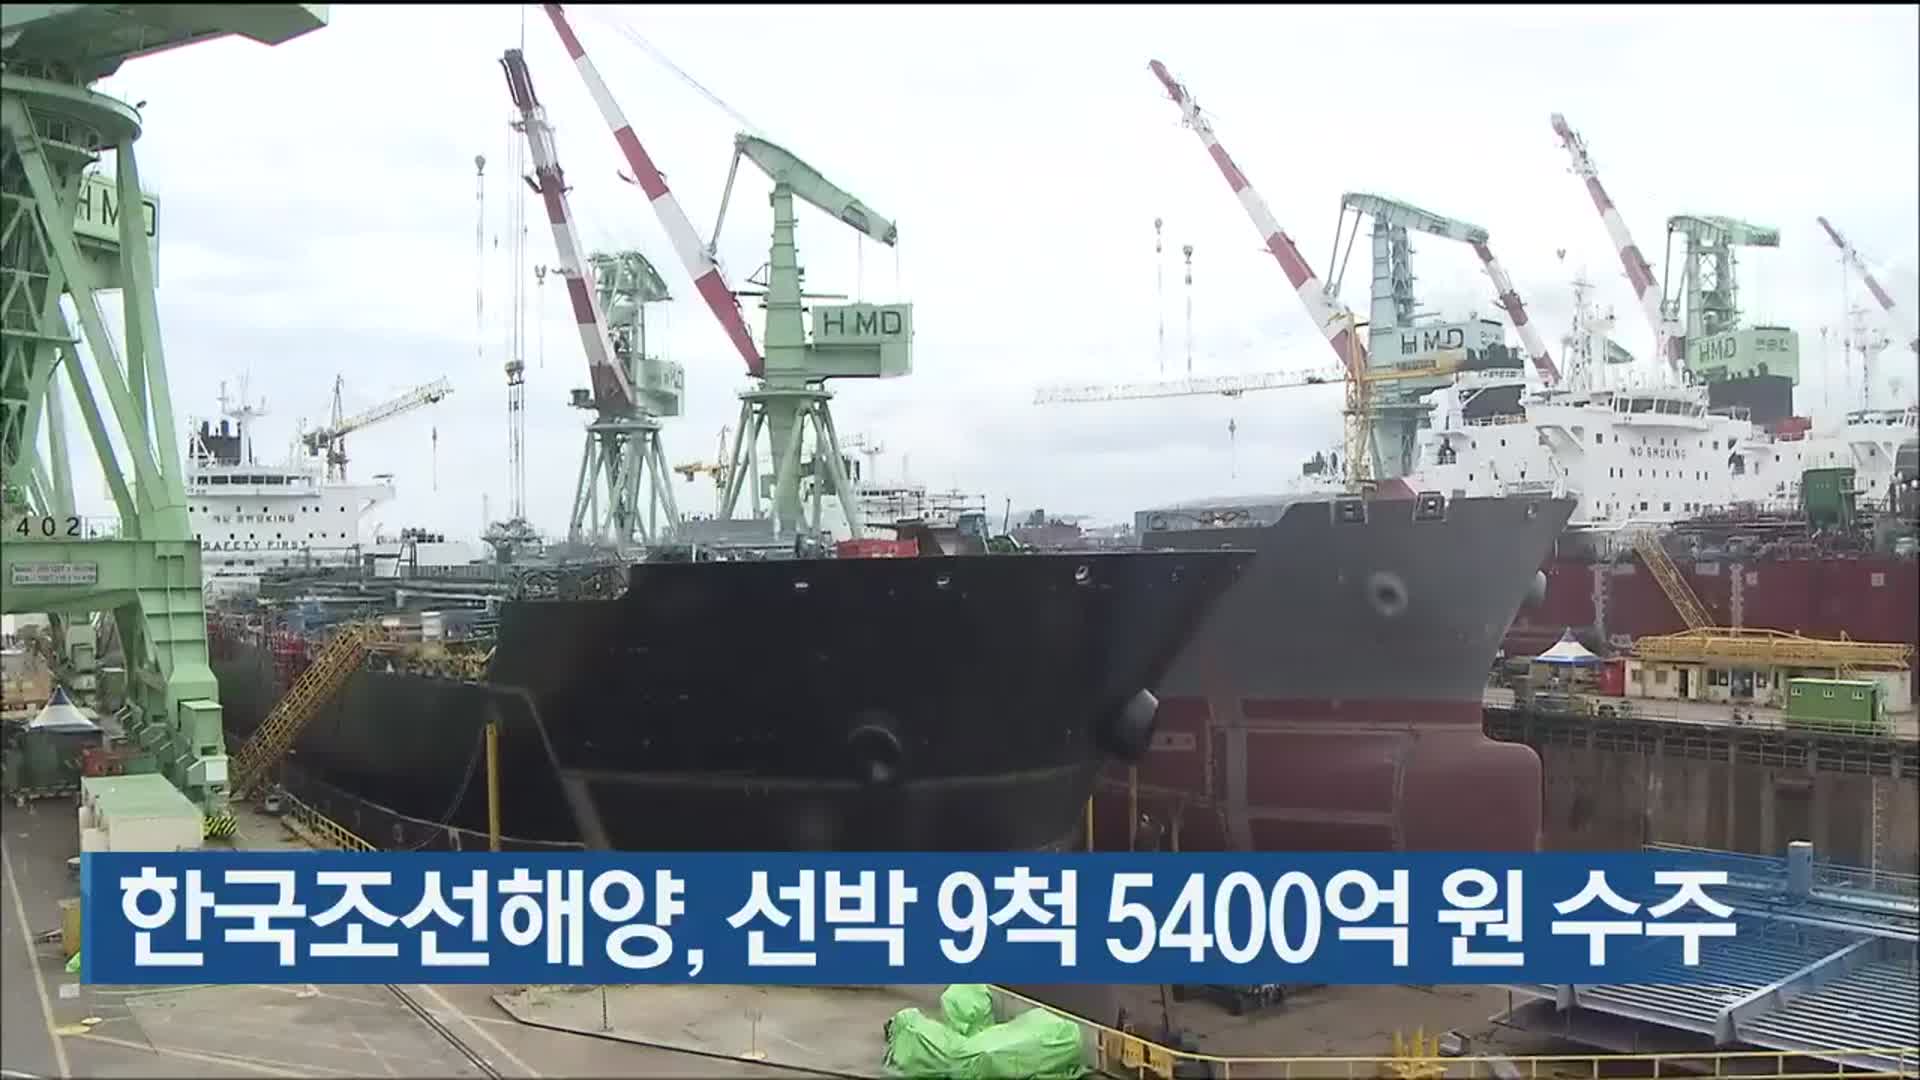 한국조선해양, 선박 9척 5400억 원 수주